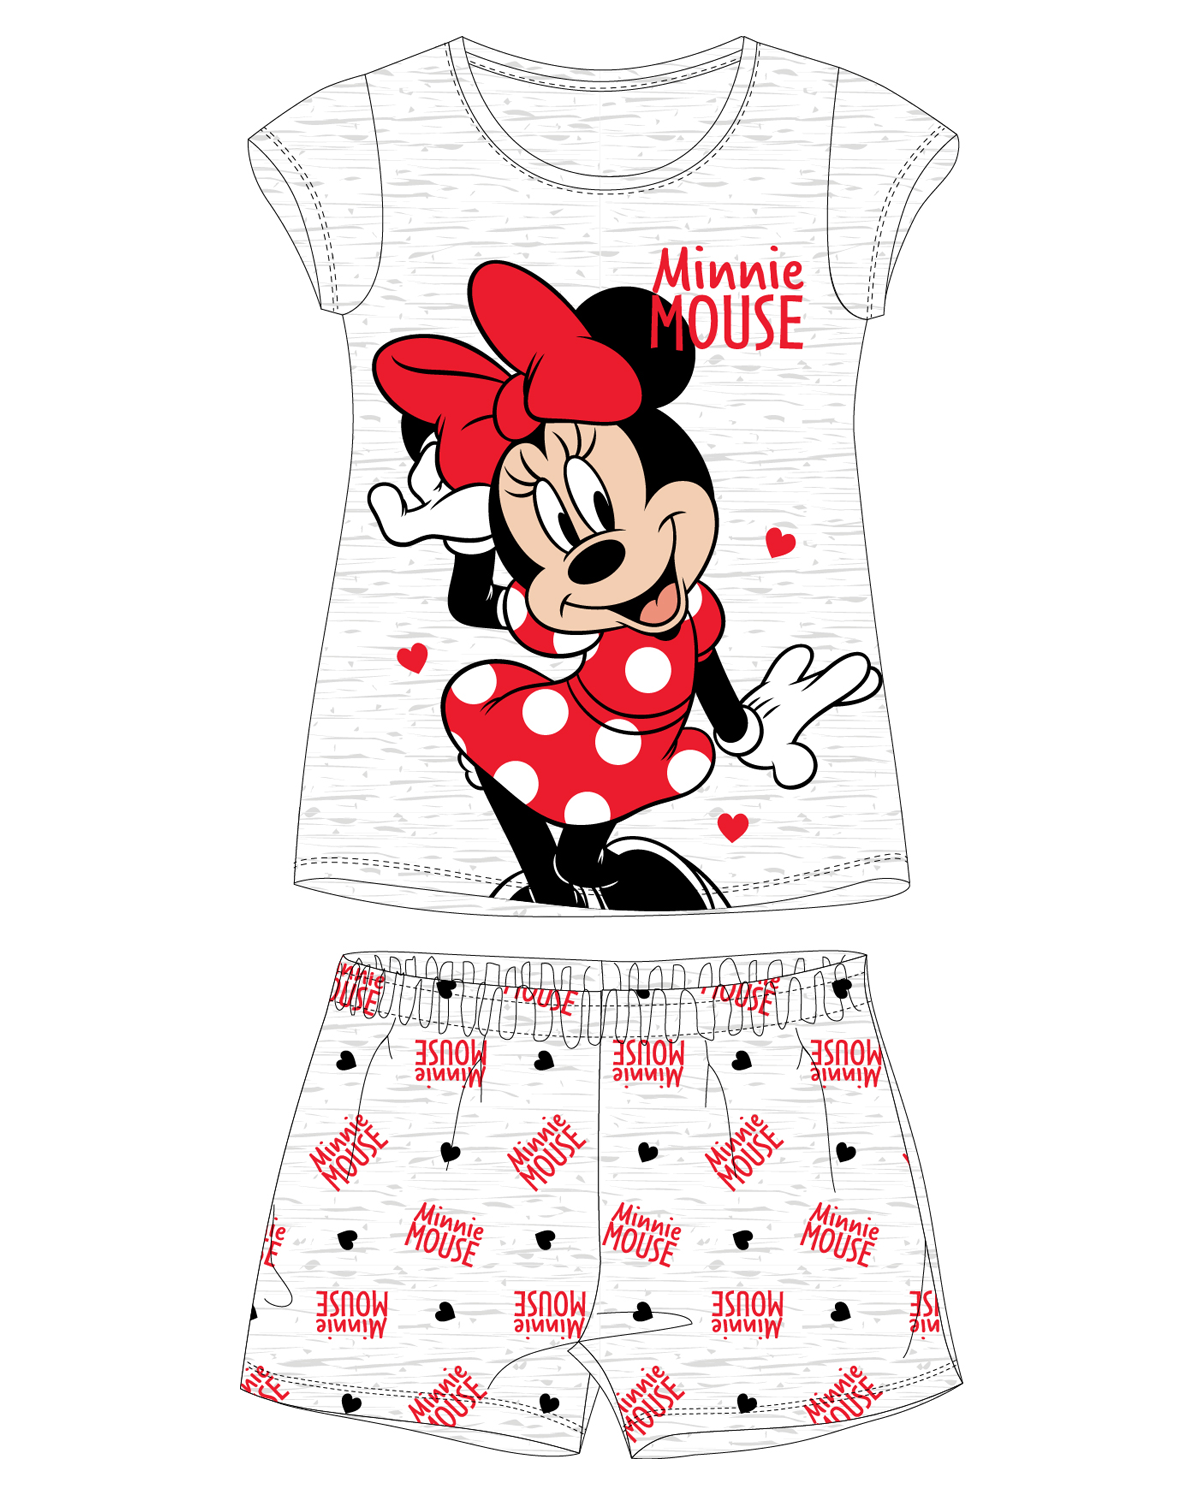 Minnie Mouse - licence Dívčí pyžamo - Minnie Mouse 5204B351W, světle šedý melír Barva: Šedá, Velikost: 92